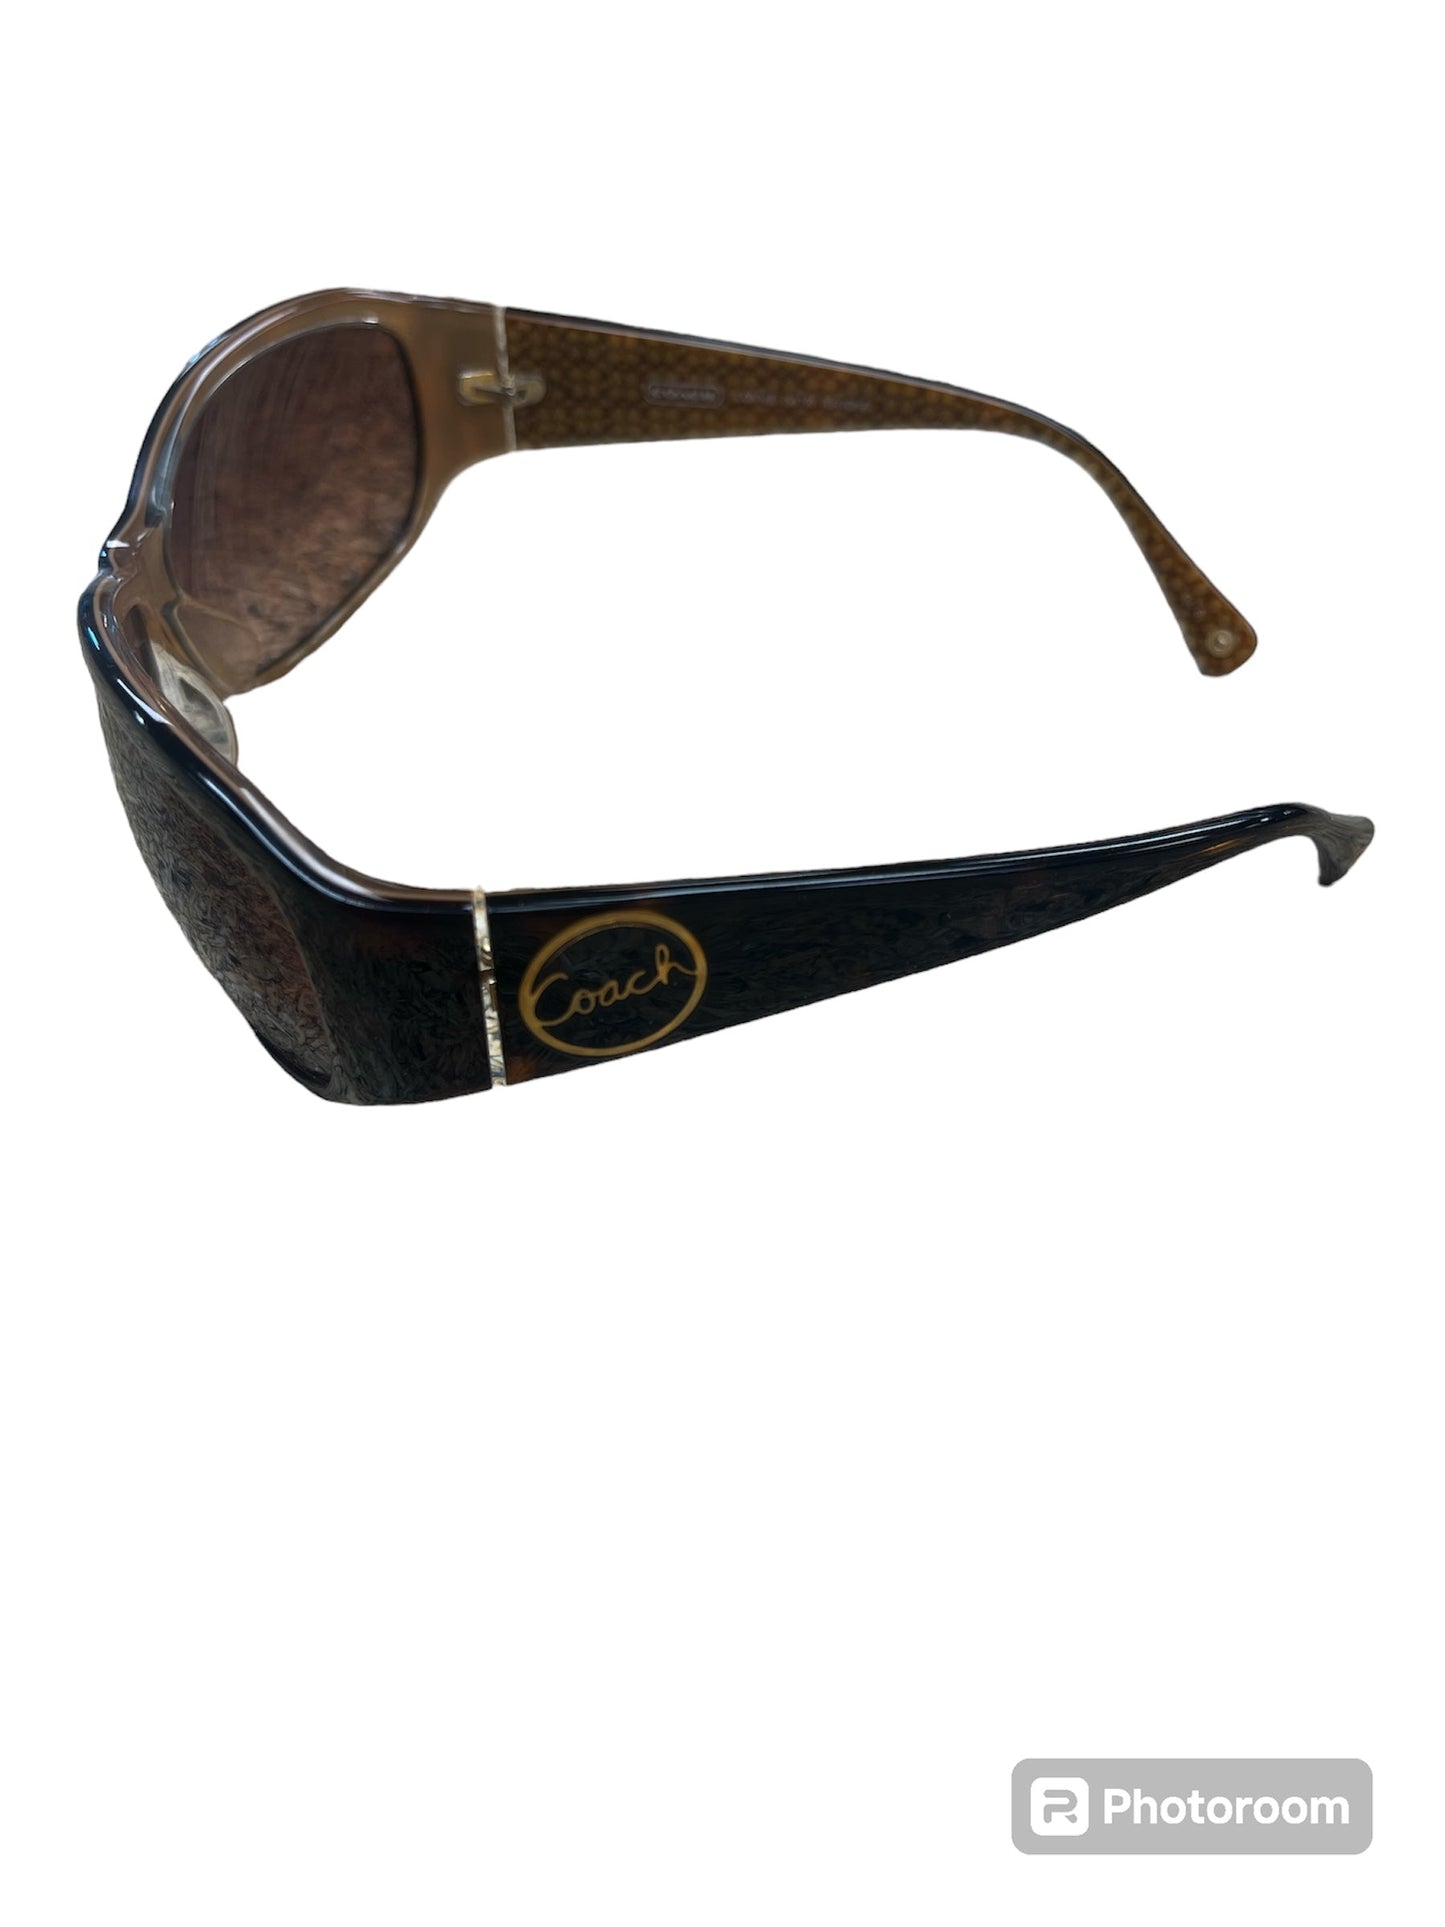 Sunglasses Designer Coach, Size 01 Piece